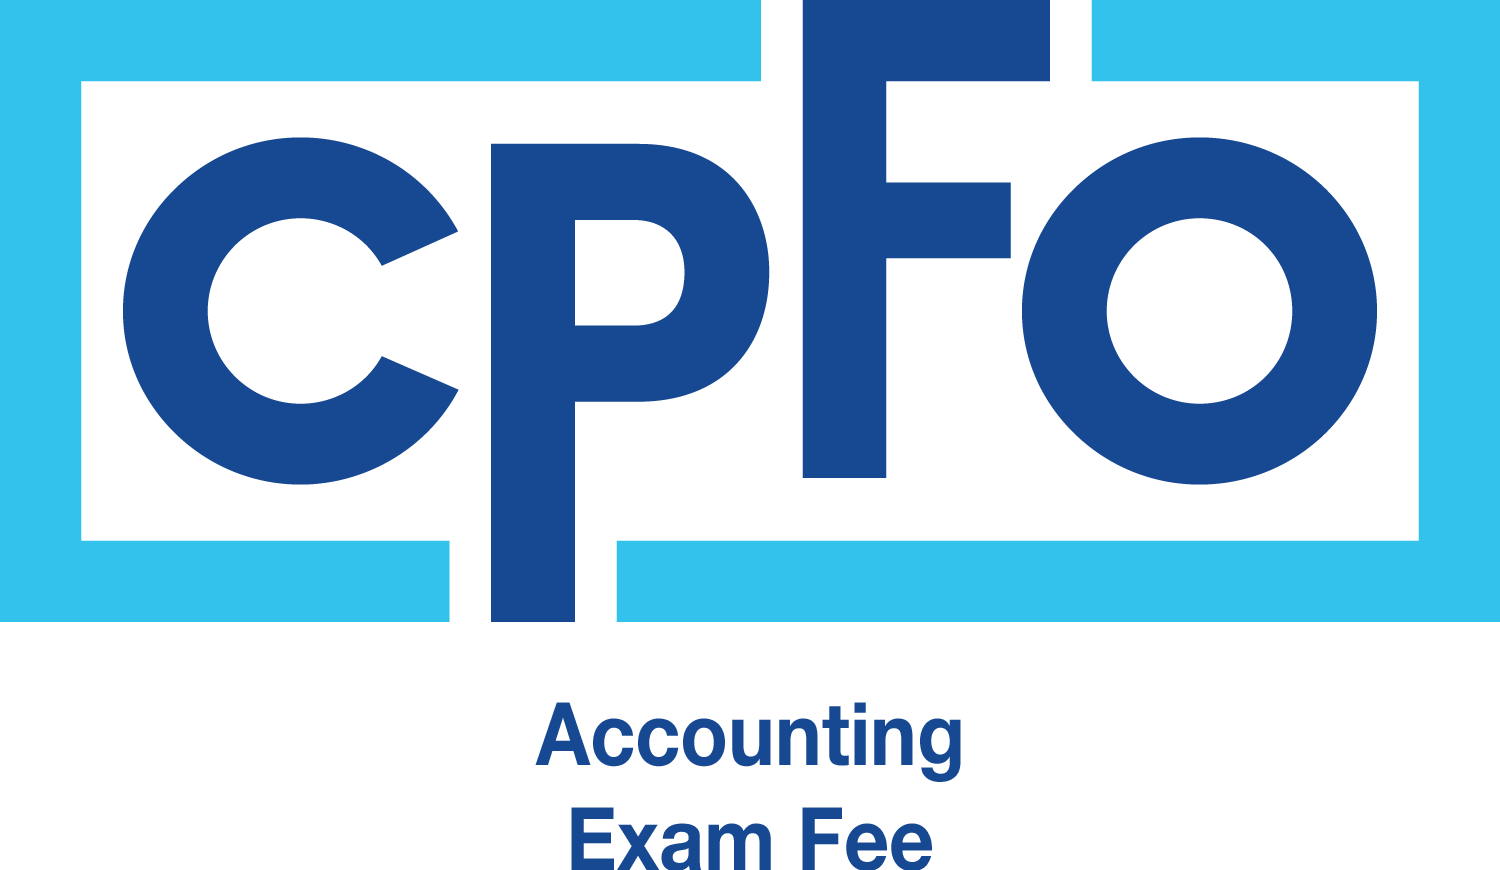 CPFO Individual Exam Fee